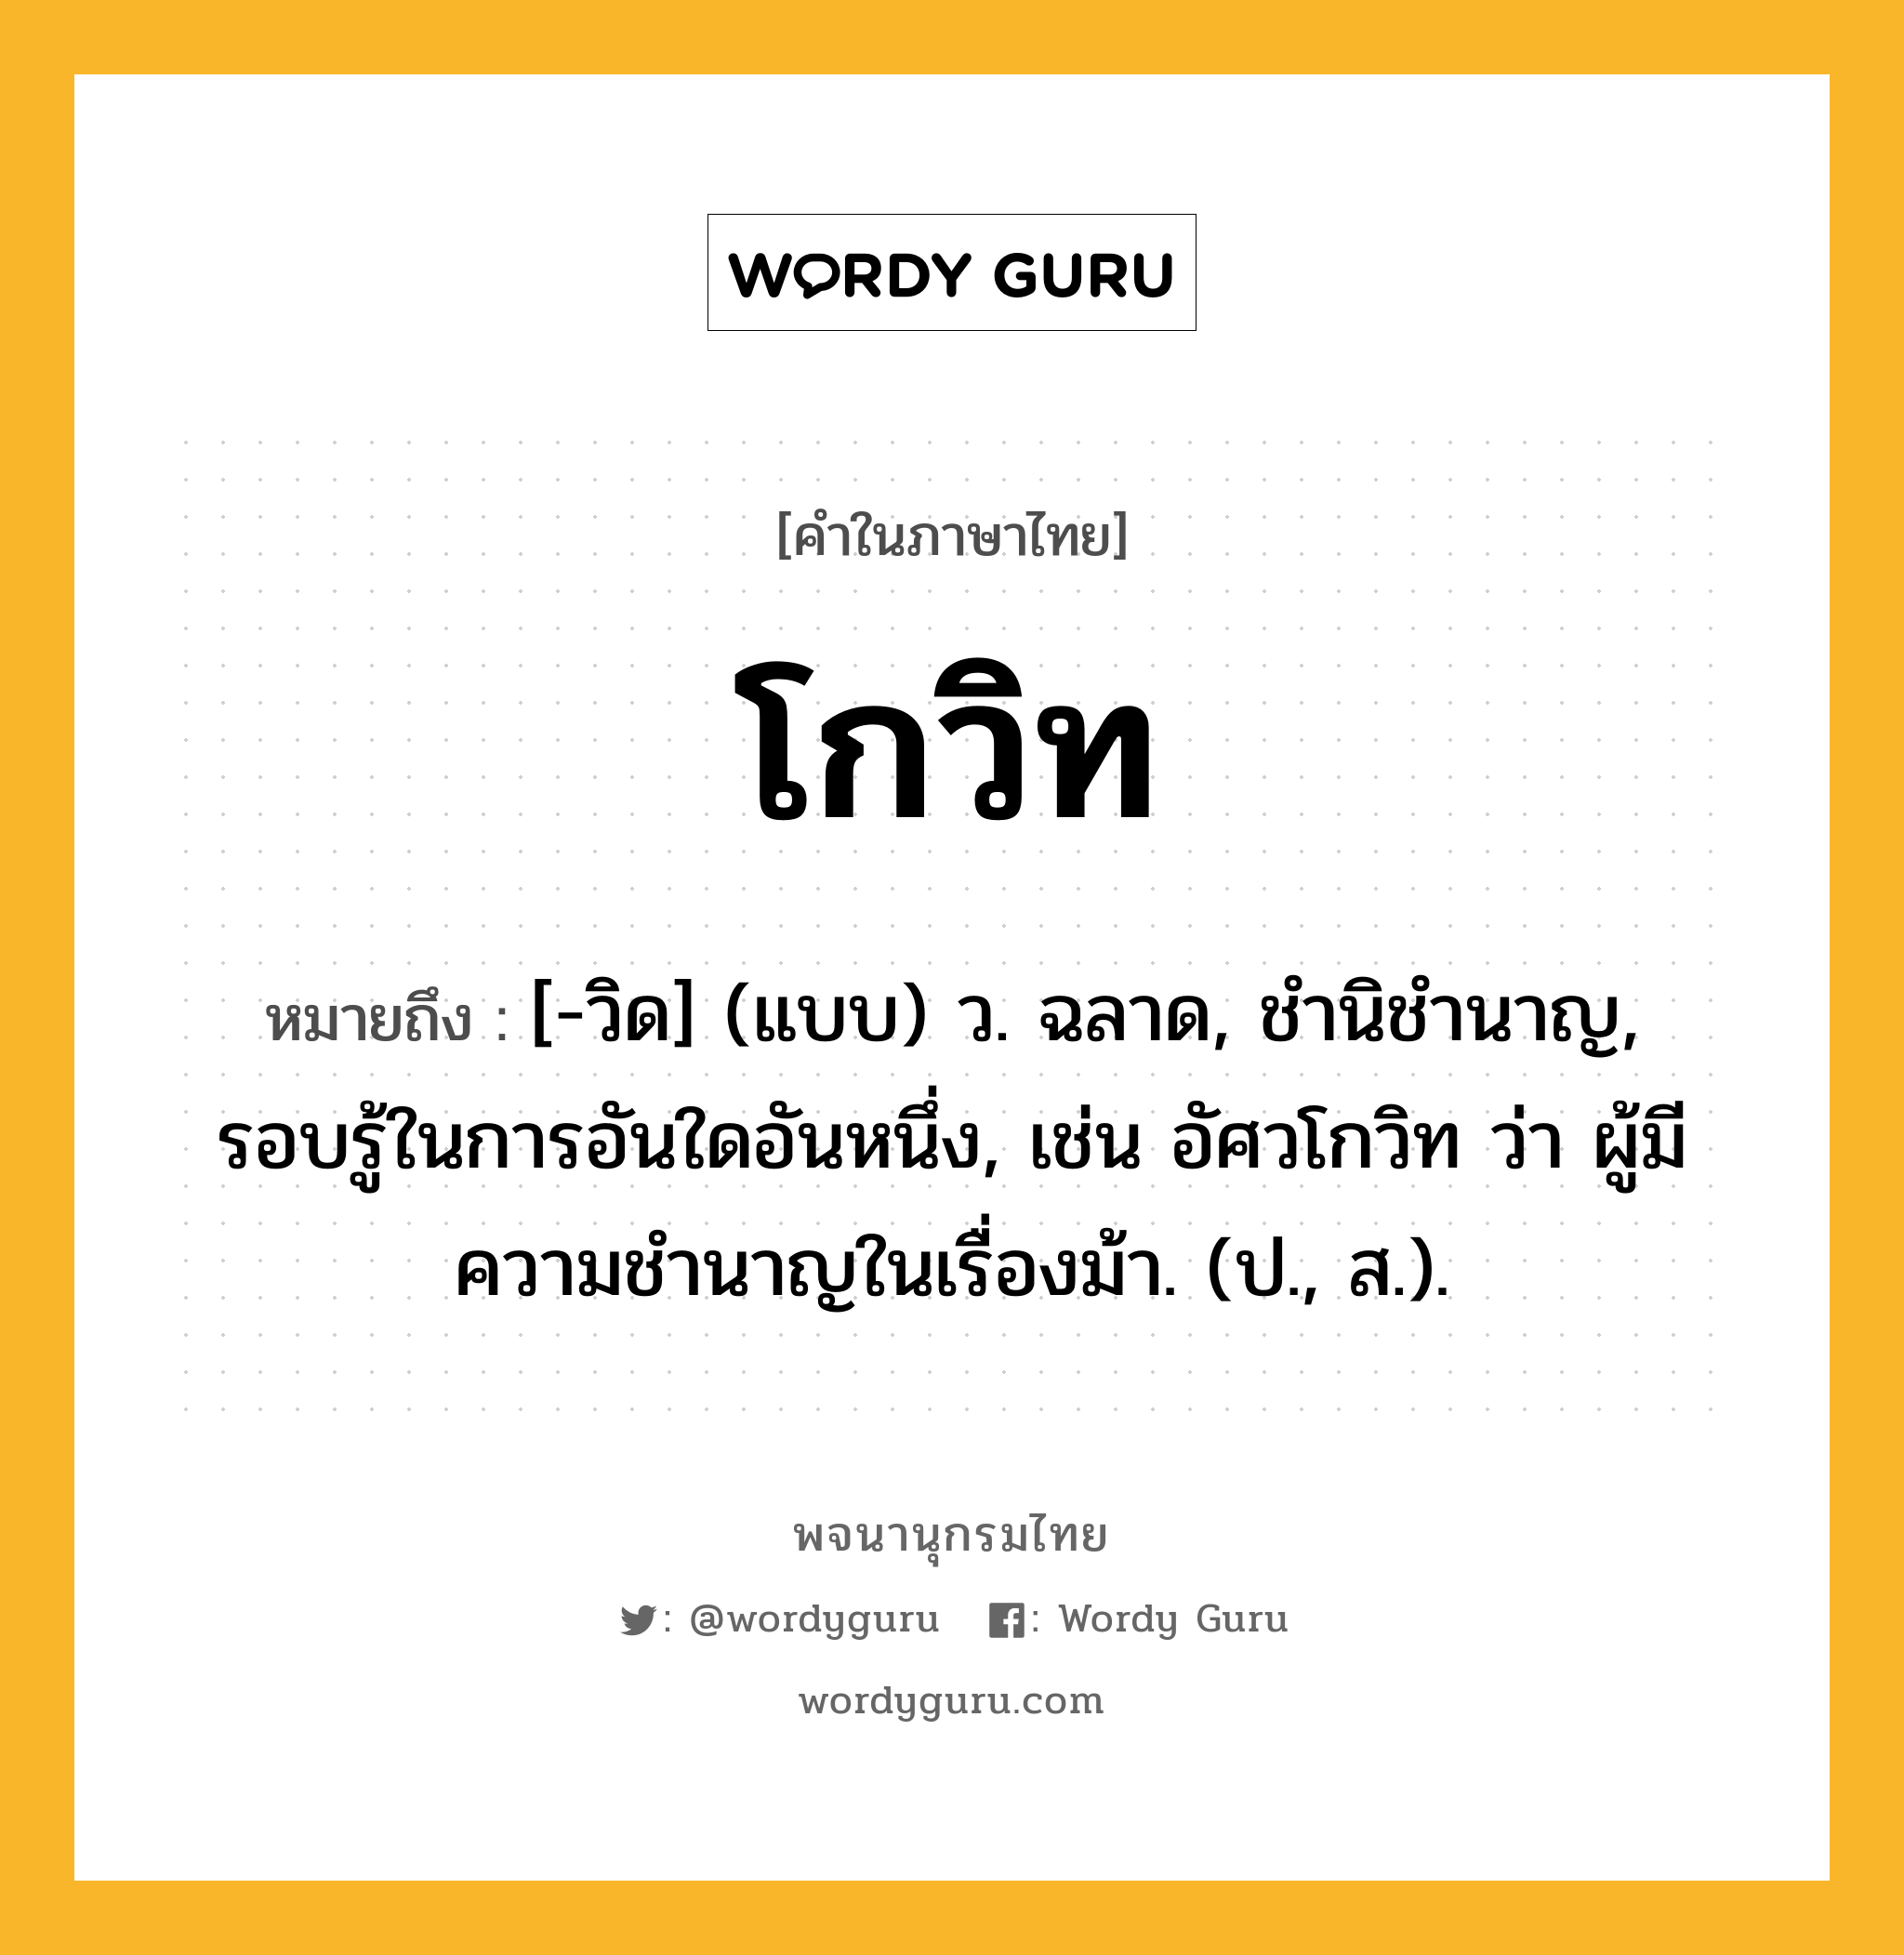 โกวิท ความหมาย หมายถึงอะไร?, คำในภาษาไทย โกวิท หมายถึง [-วิด] (แบบ) ว. ฉลาด, ชํานิชํานาญ, รอบรู้ในการอันใดอันหนึ่ง, เช่น อัศวโกวิท ว่า ผู้มีความชํานาญในเรื่องม้า. (ป., ส.).